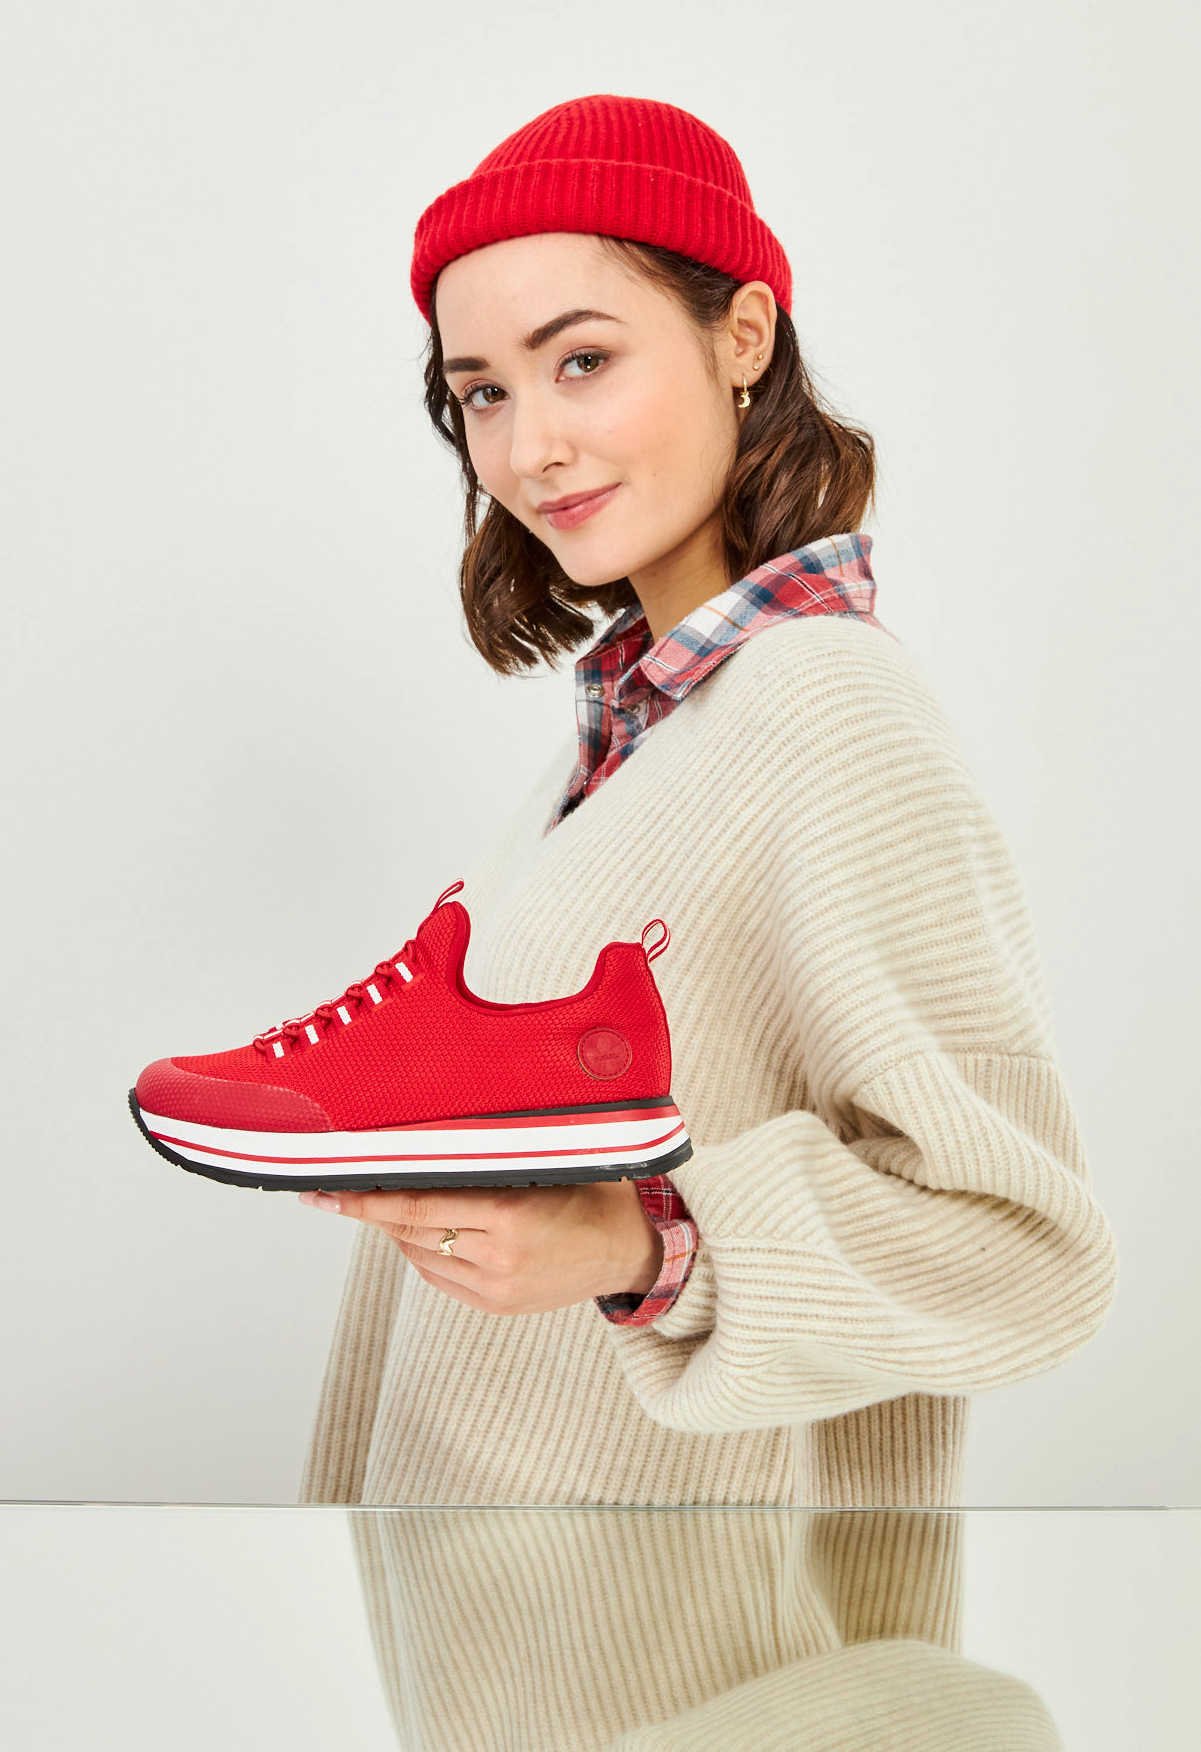 Eine junge Frau hält einen roten Schuh in das Bild